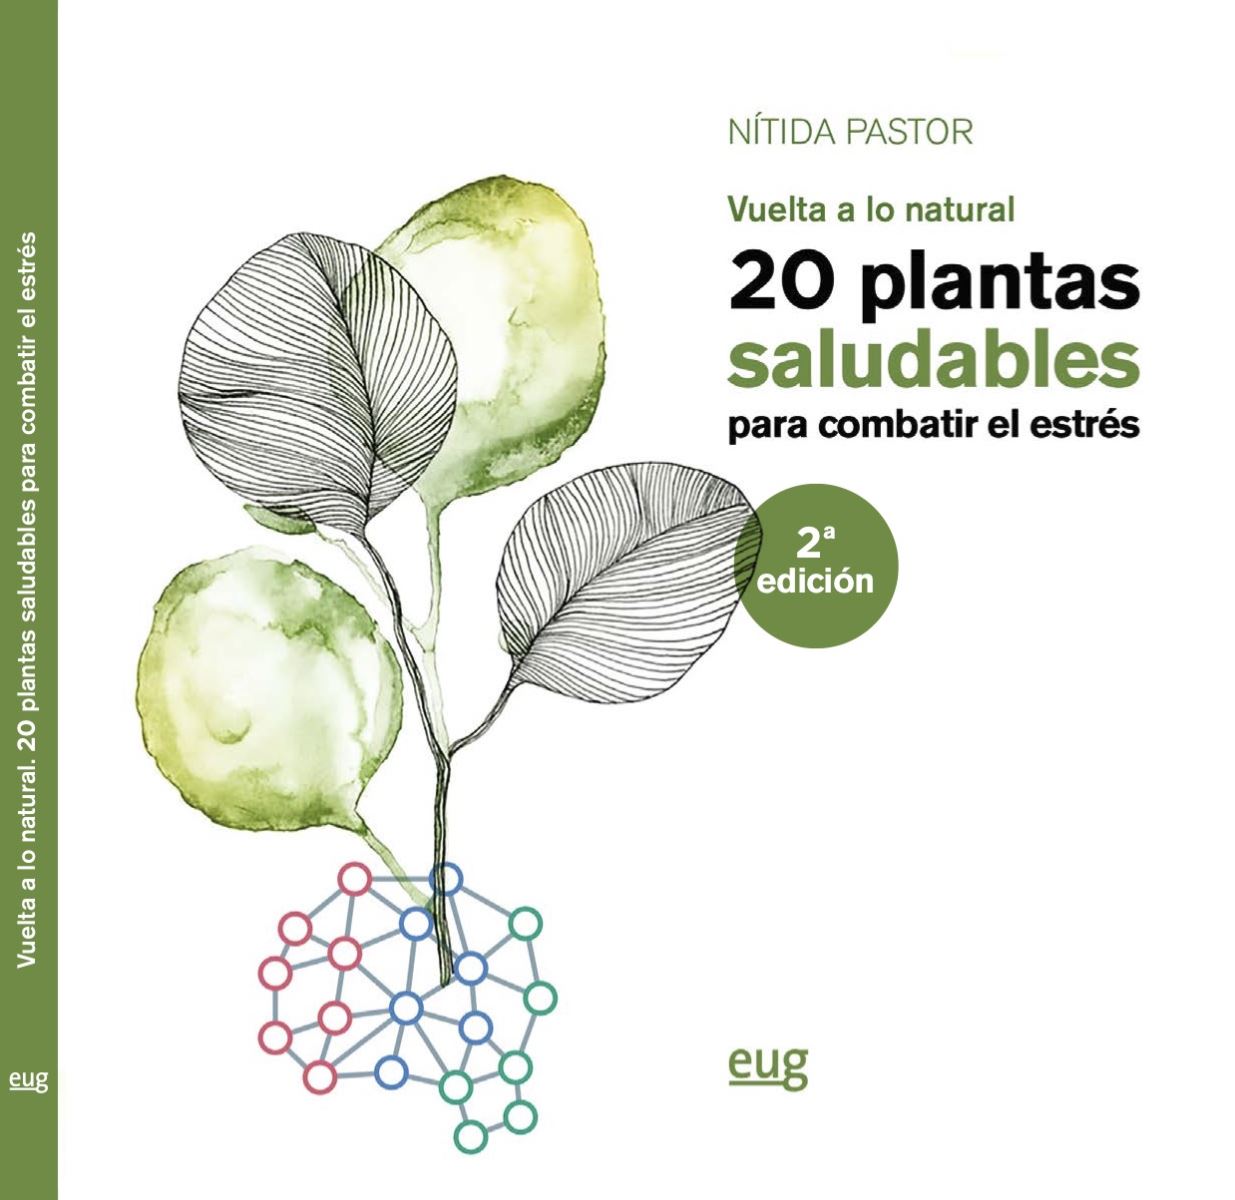 La Universidad de Granada presenta el libro "20 plantas saludables para combatir el estrés. Vuelta a lo natural", de Nítida Pastor